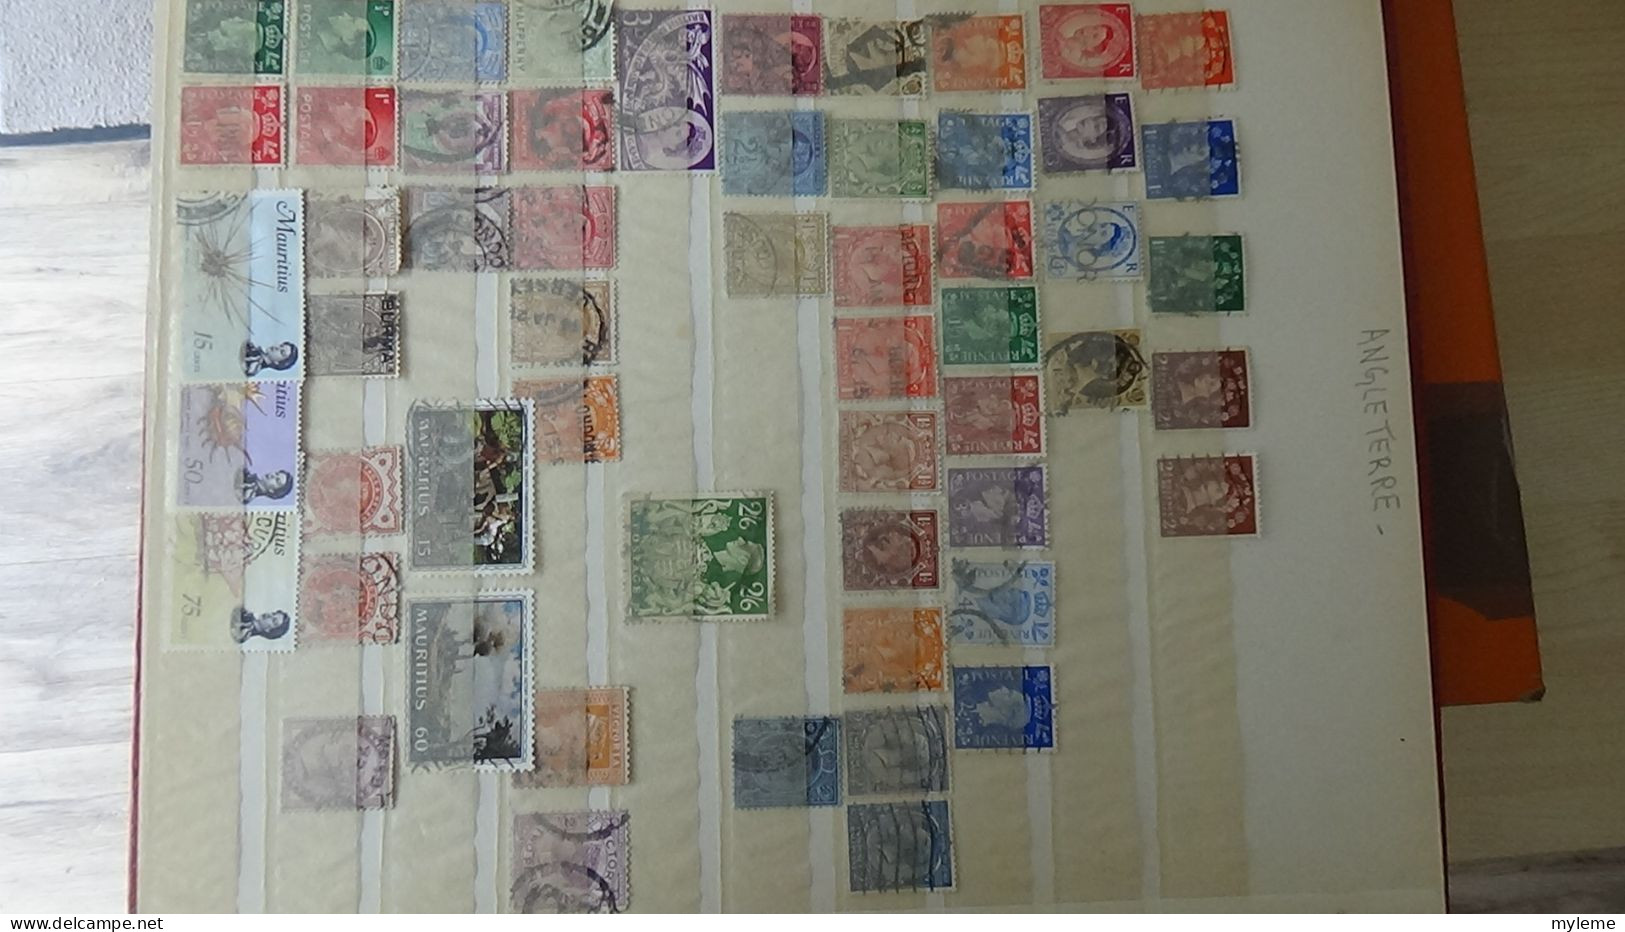 BF50 Bel ensemble de timbres oblitérés de divers pays + plaquette de timbres **. A saisir !!!